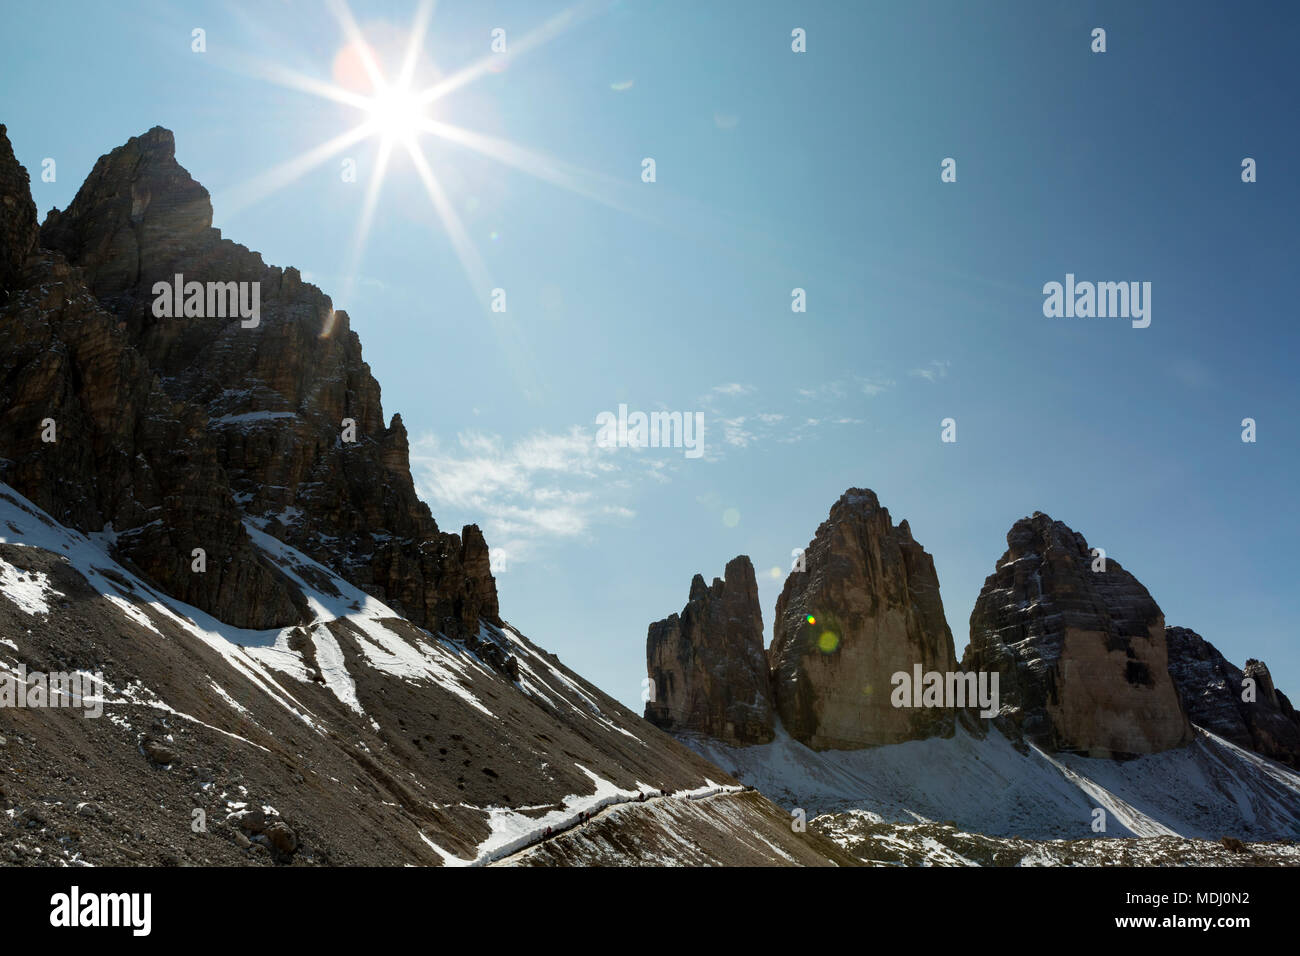 Robusto guglie di montagna con sunburst e cielo blu; Sesto, Bolzano, Italia Foto Stock